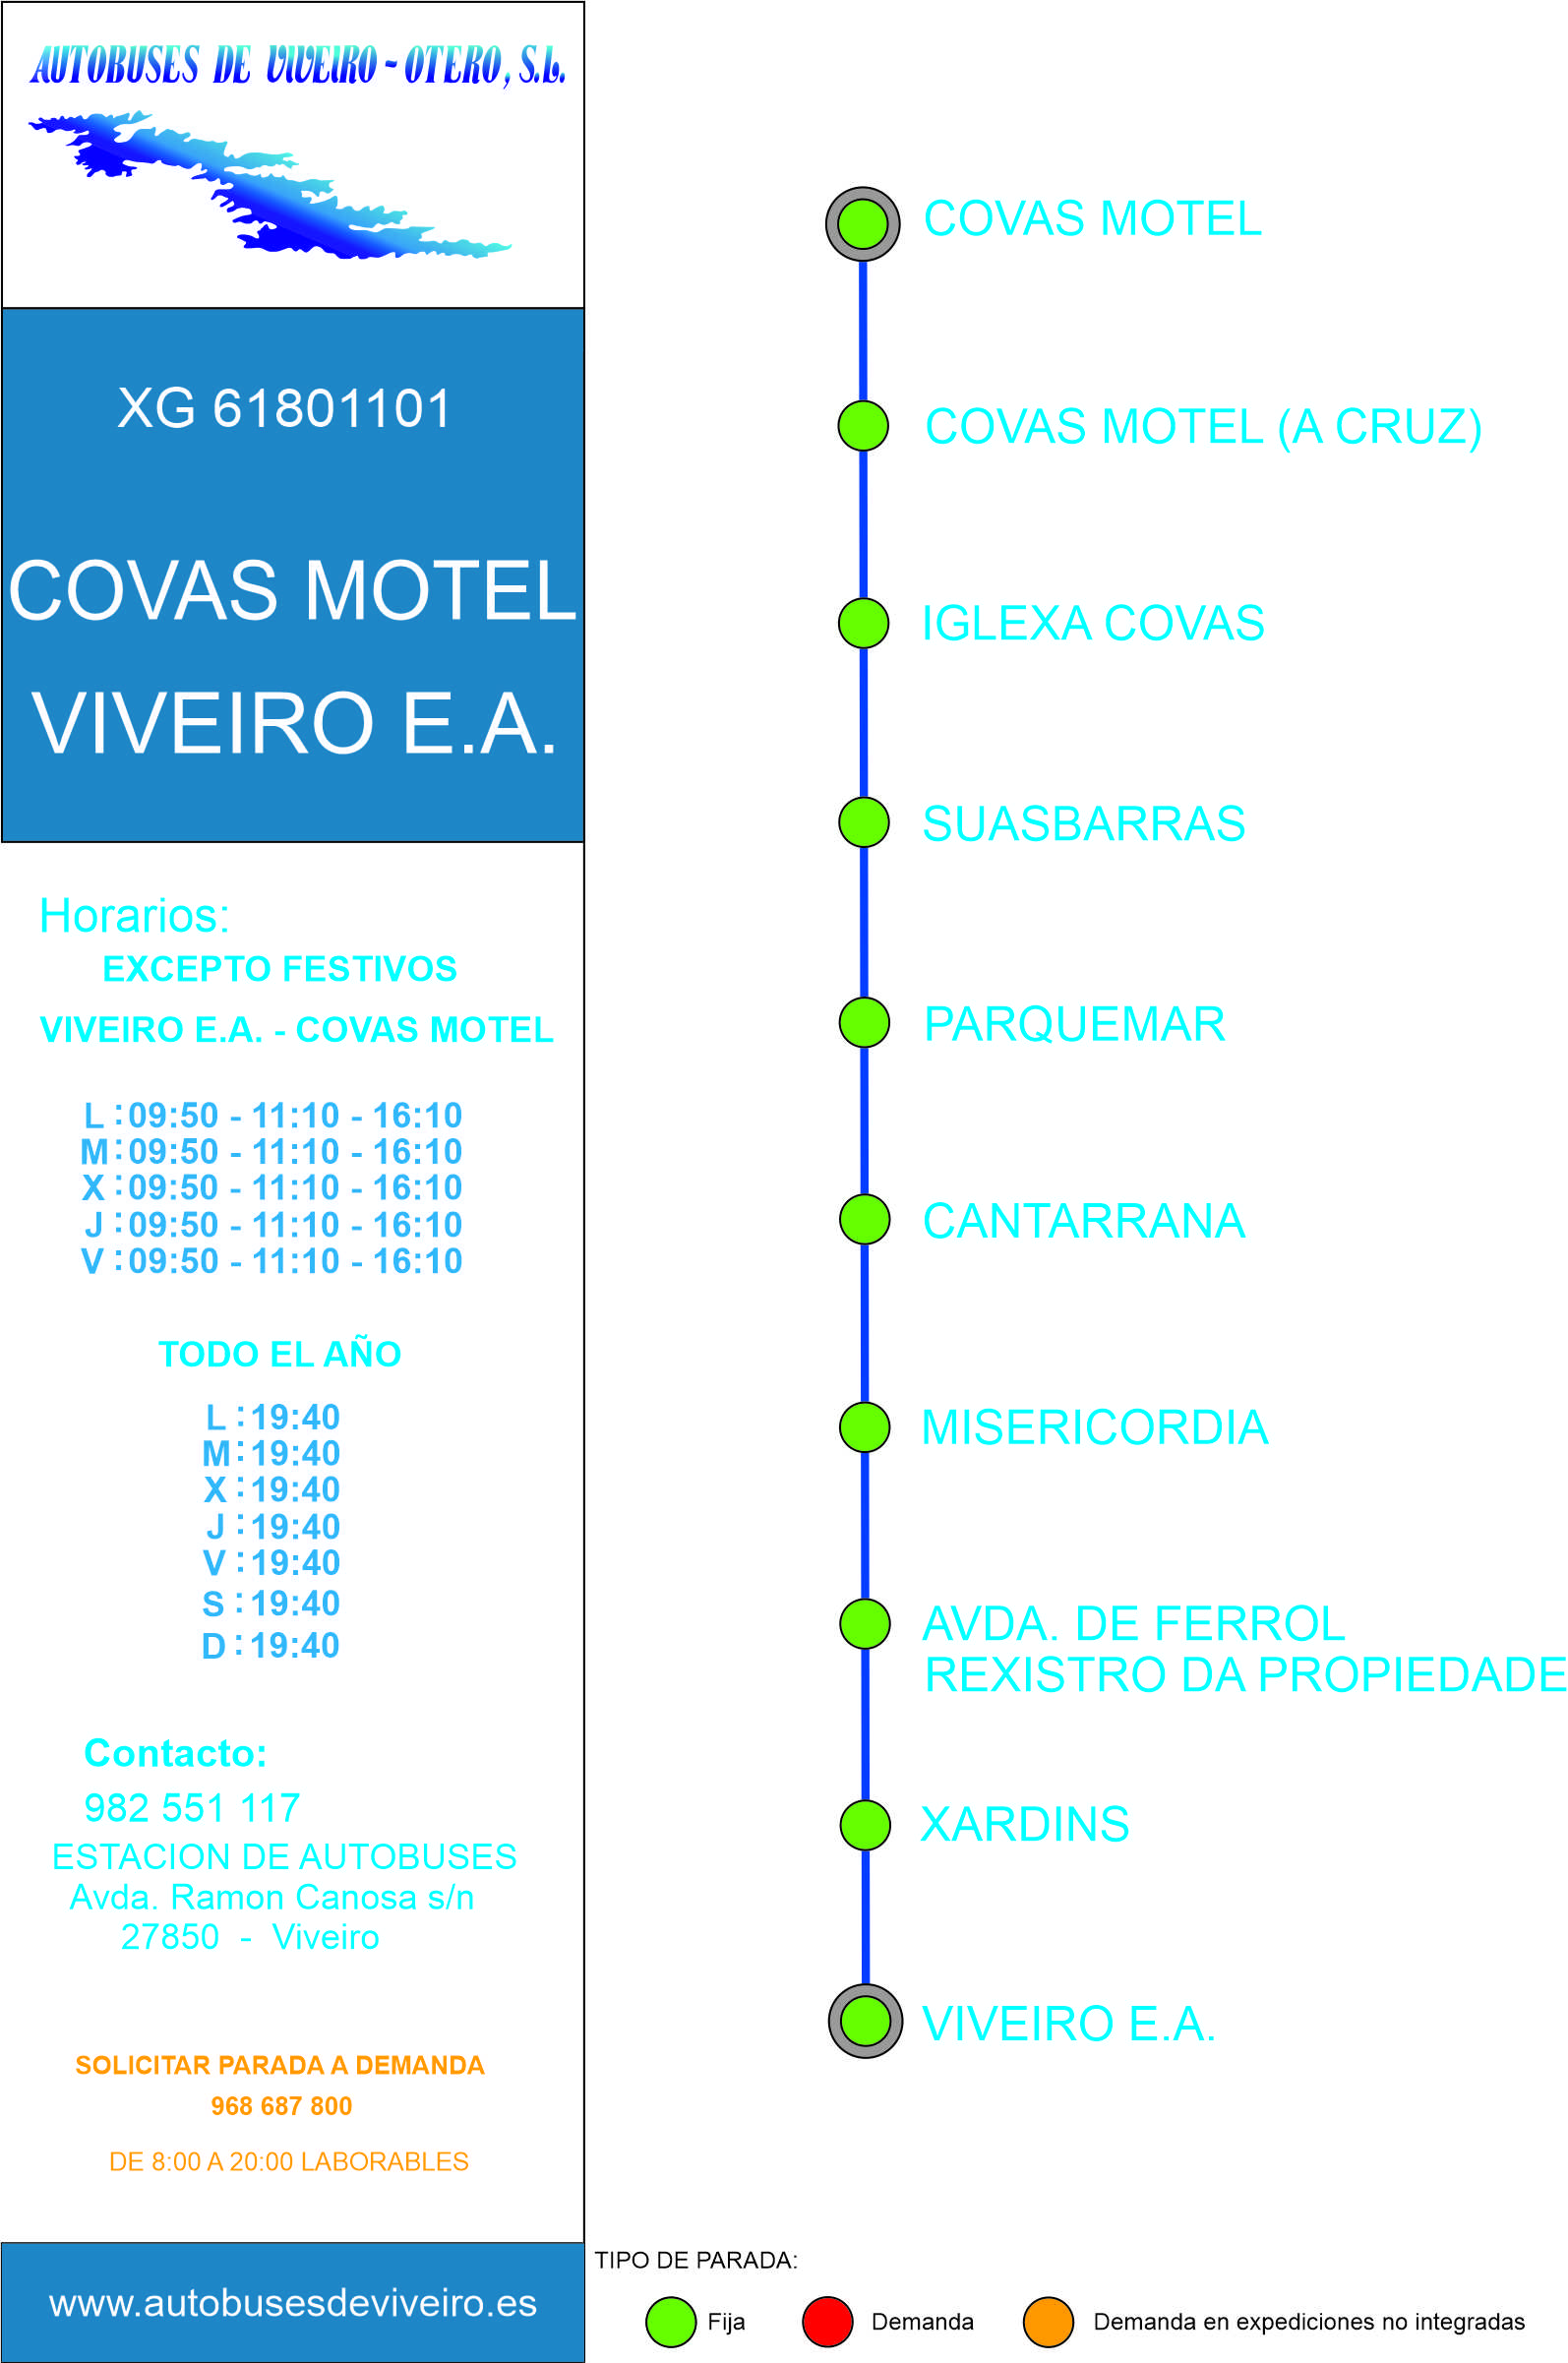 Xg61801101 Covas Motel   Viveiro E.A.